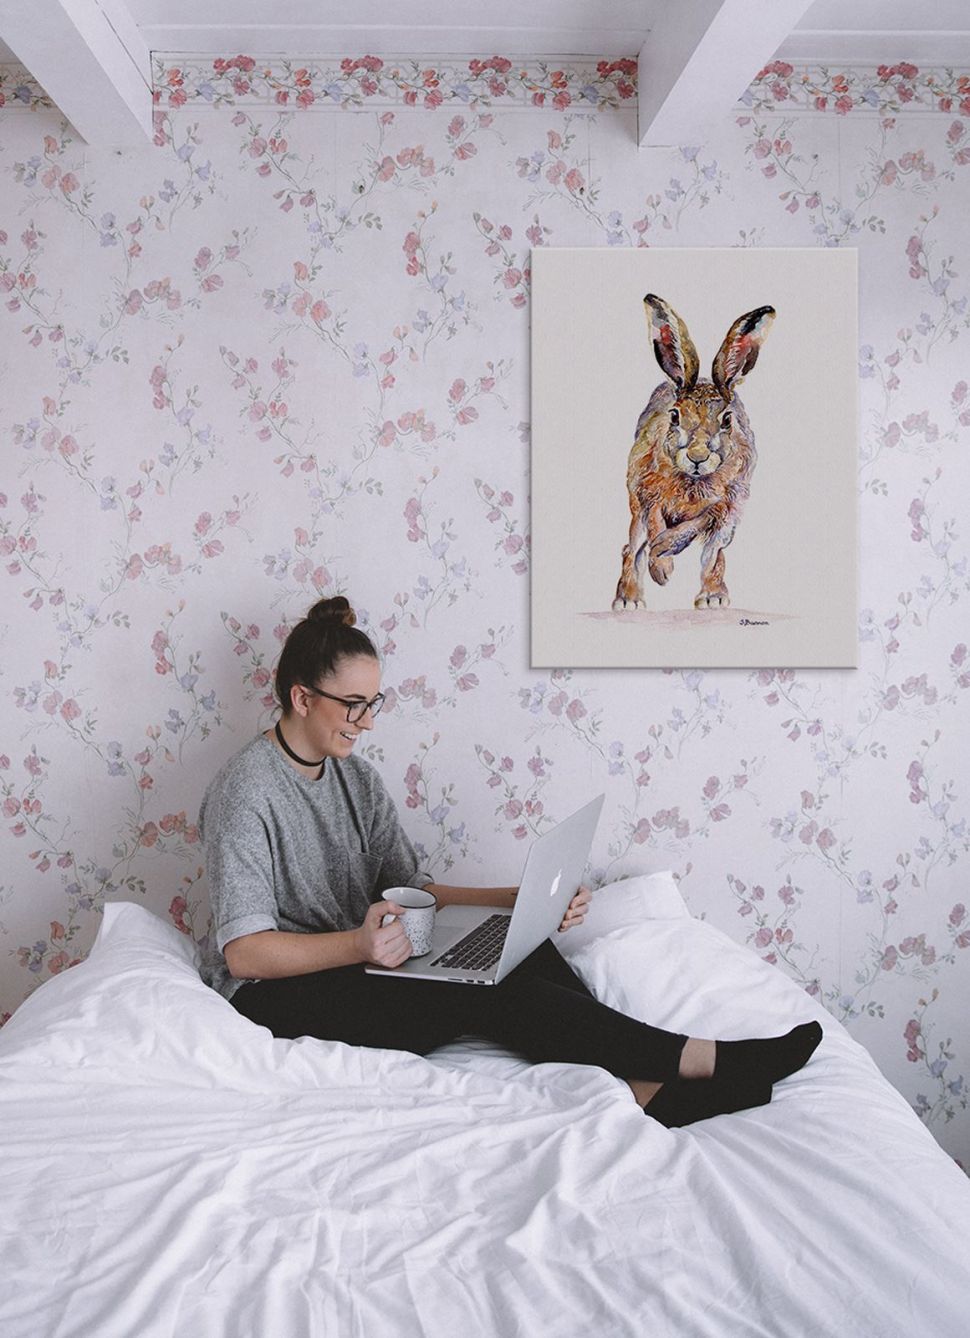 Canvas z biegnącym królikiem powieszony w sypialni nad białym łóżkiem z dziewczyną na ścianie w różowe kwiatki